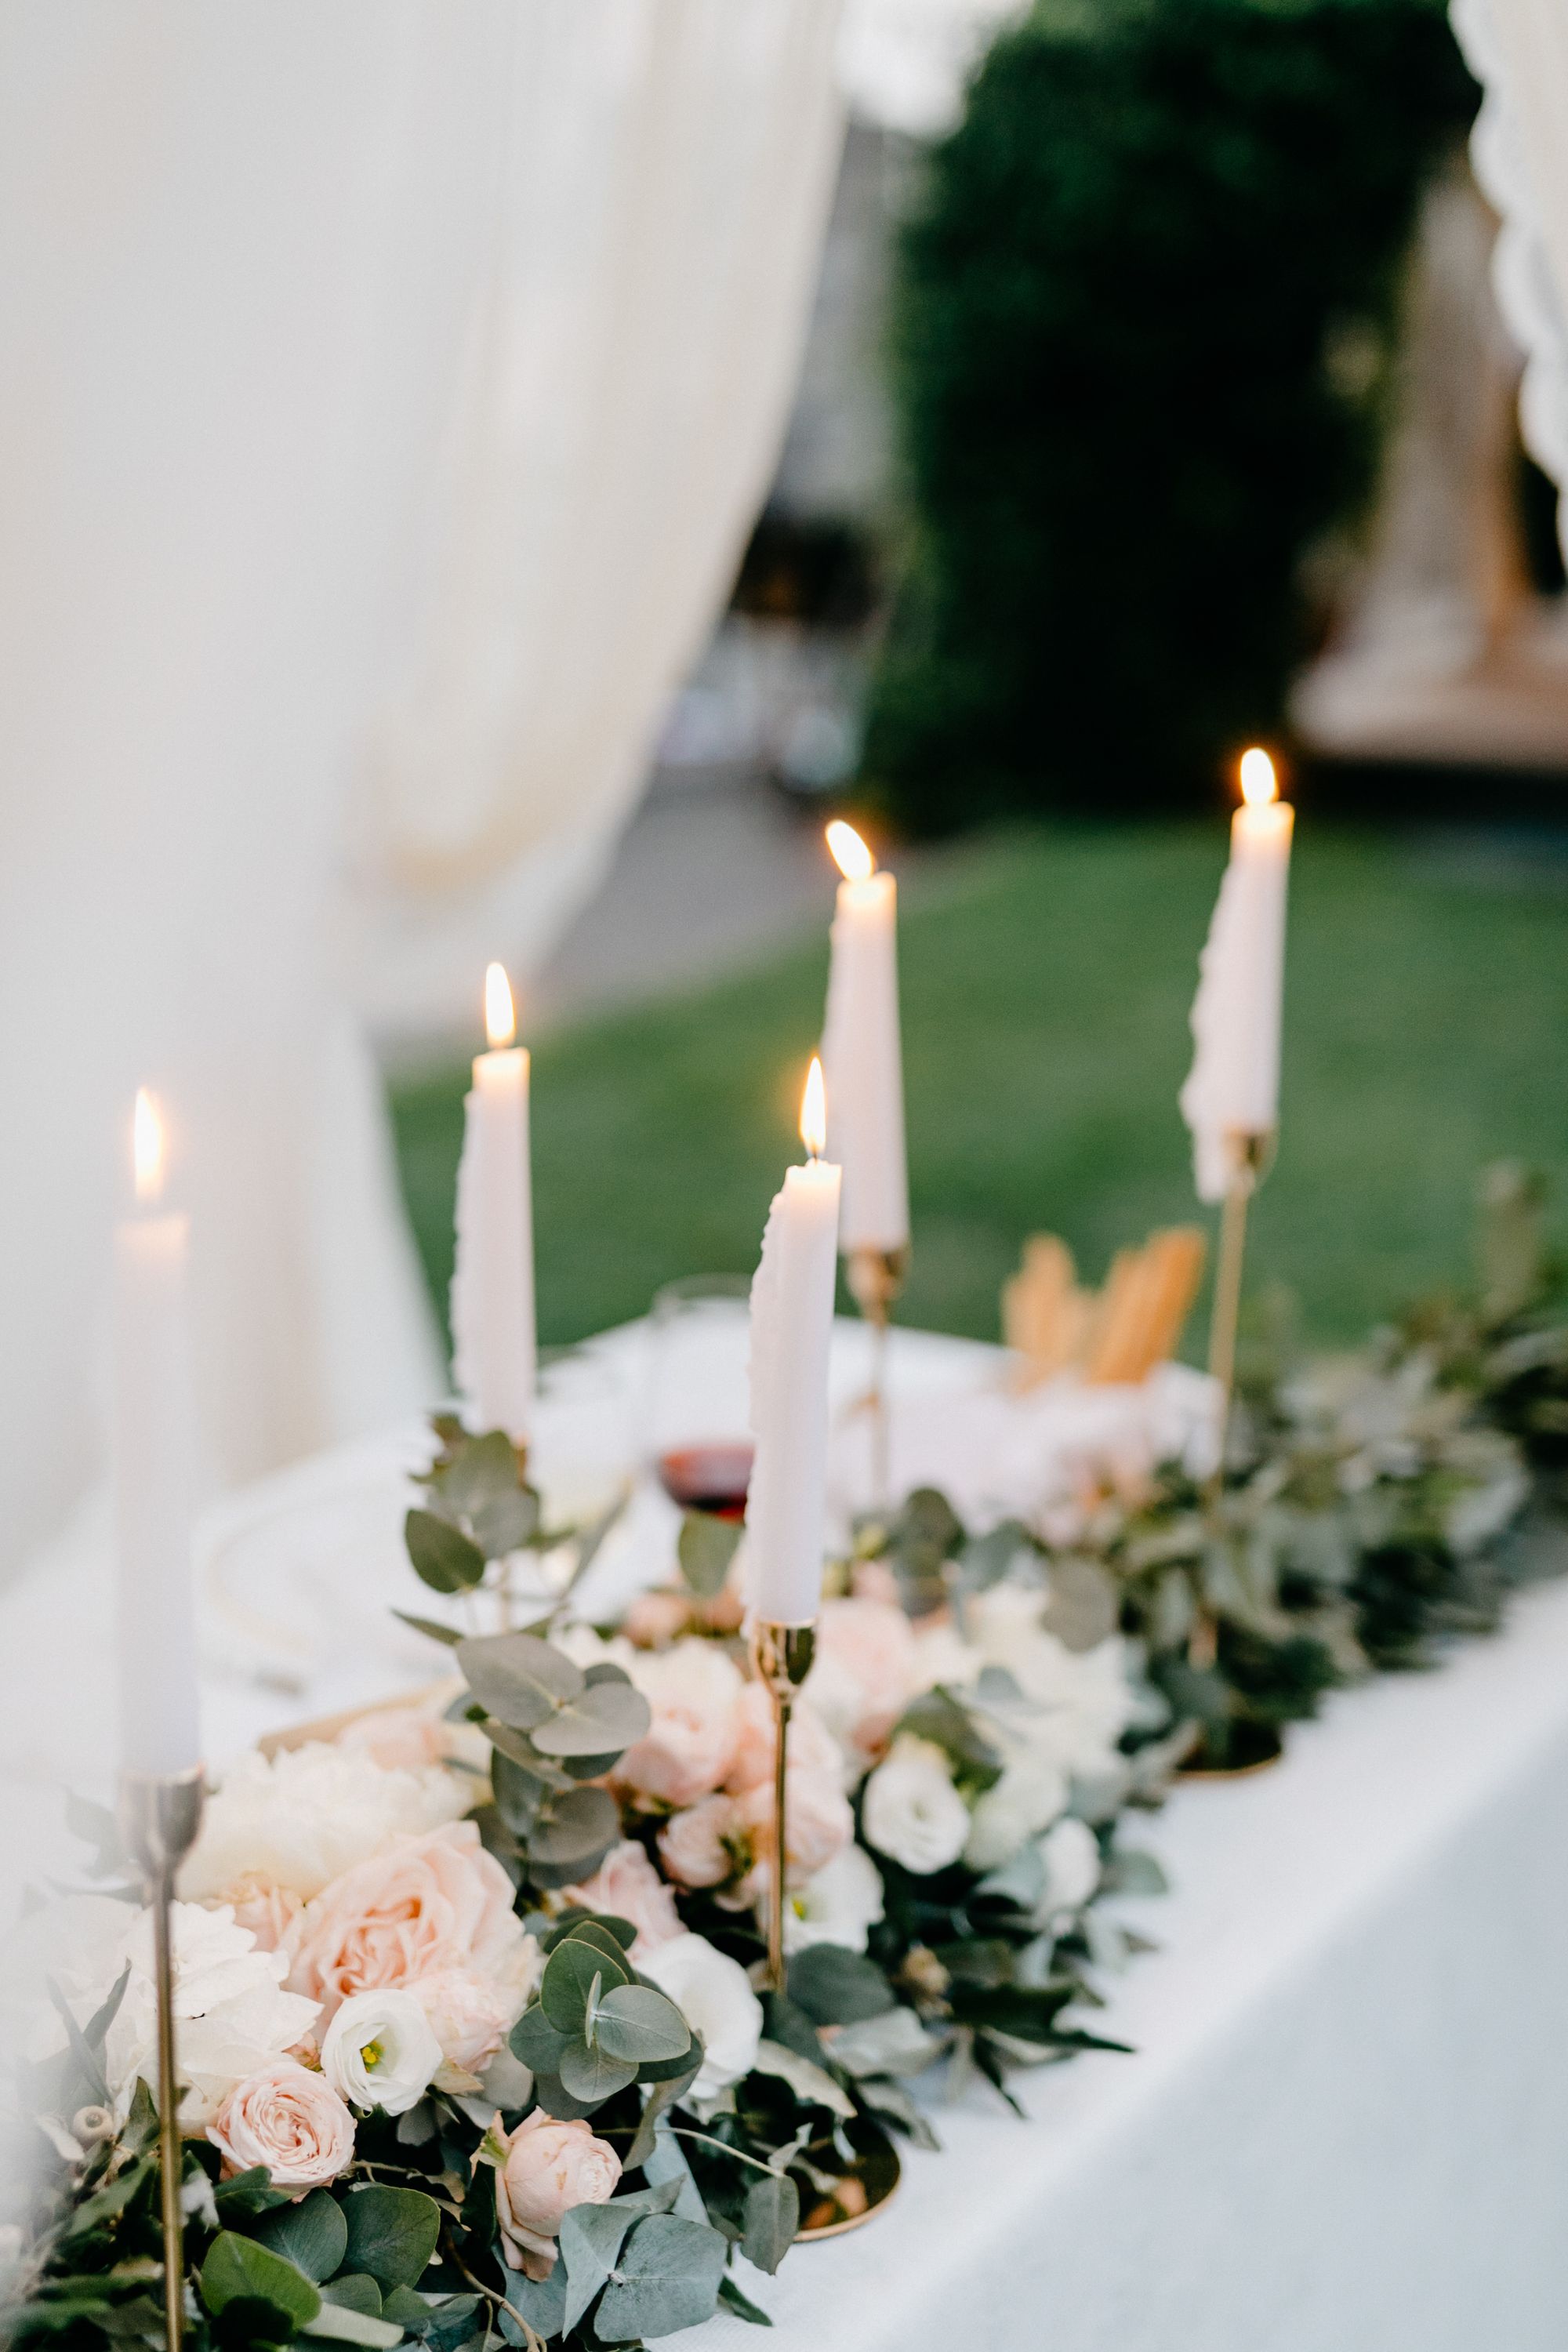 Kerzen und Blumen schmücken die Hochzeitstafel.